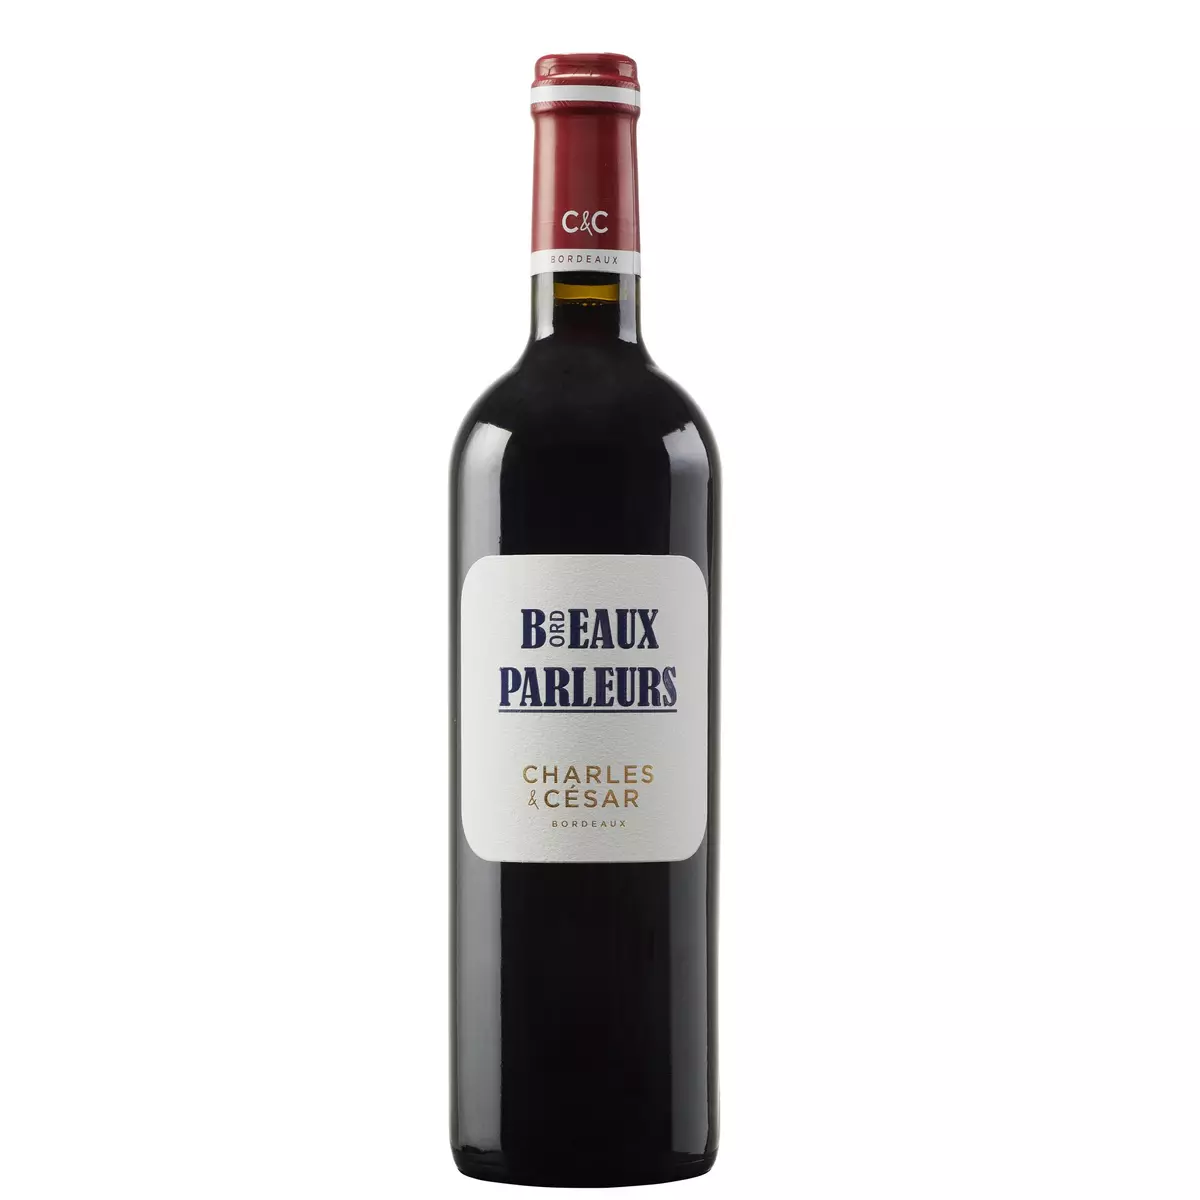 Vin rouge AOP Bordeaux Beaux Parleurs Charles & César HVE 2020 75cl